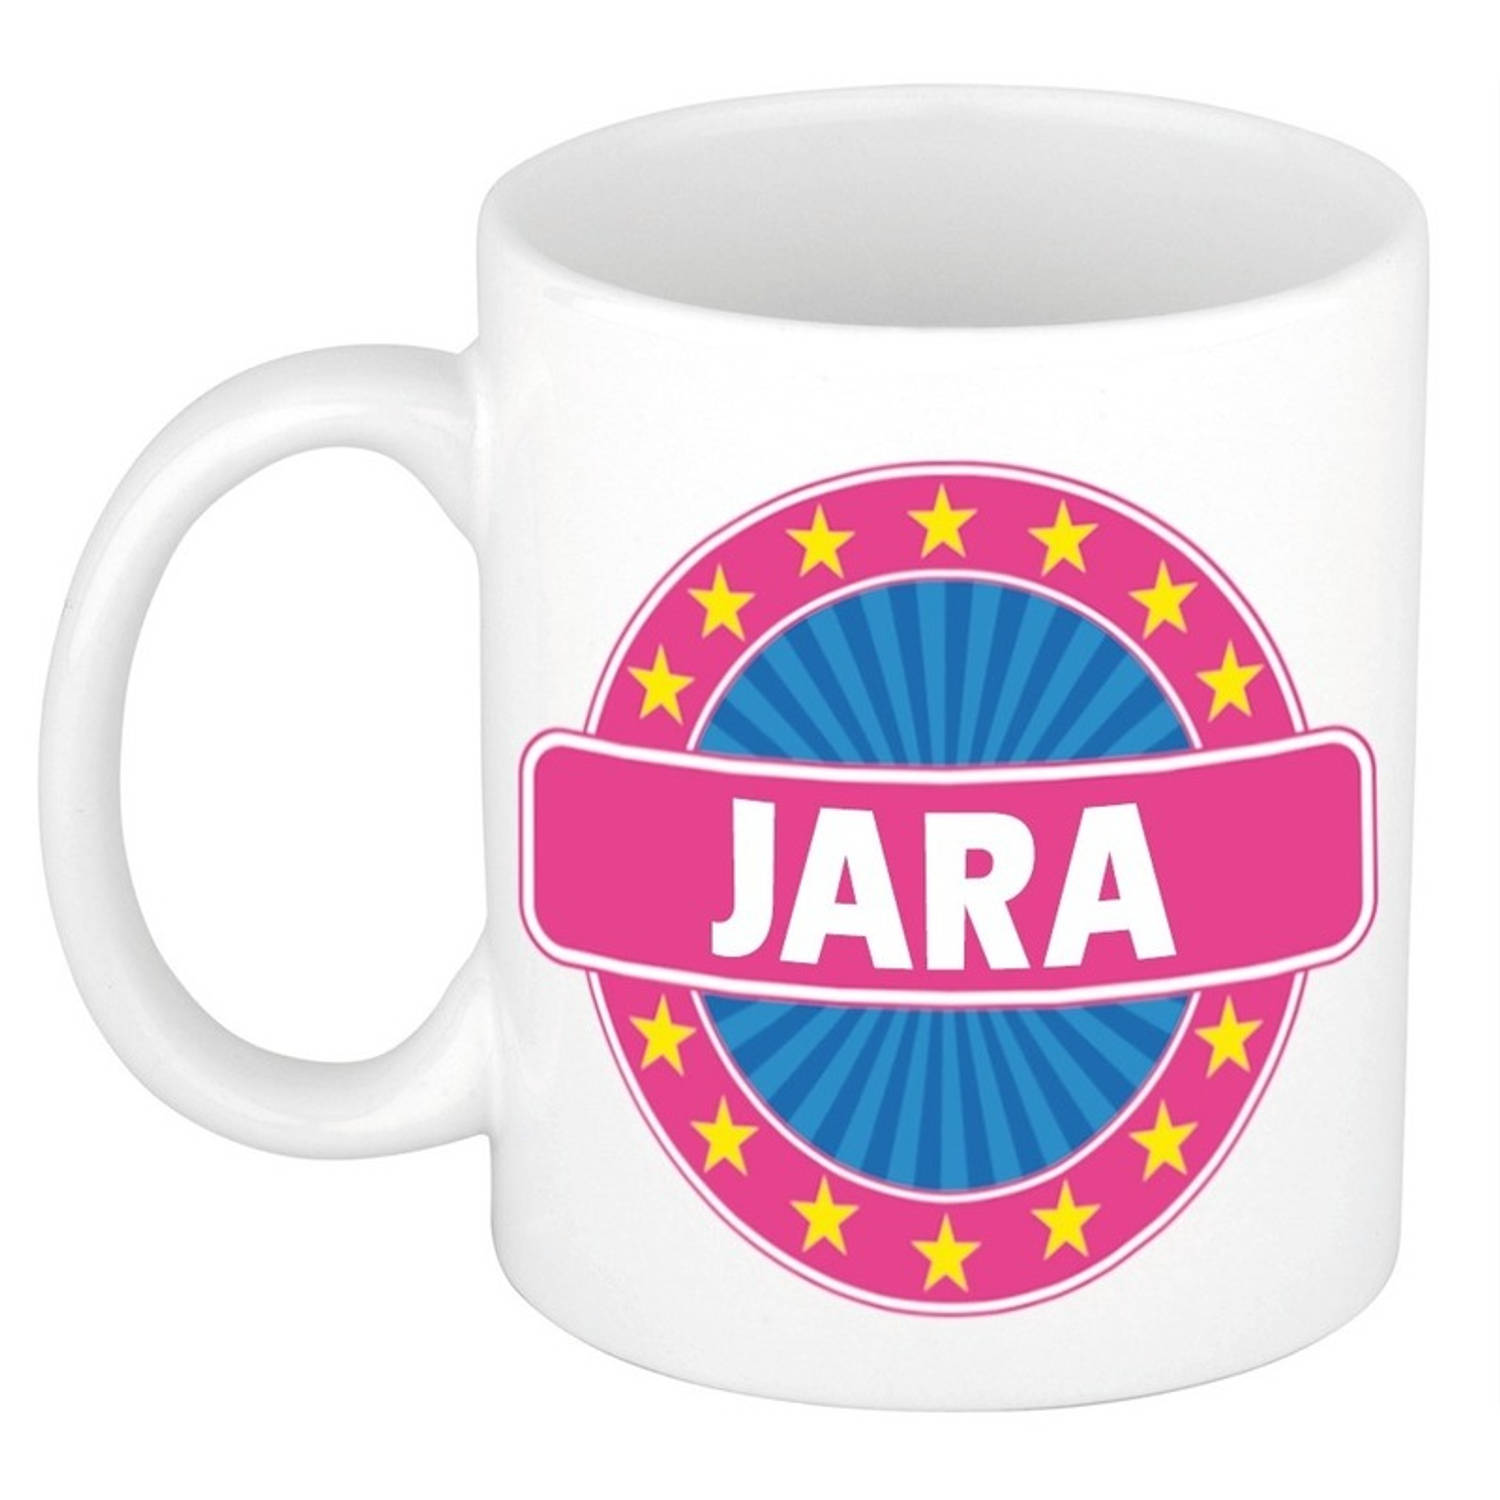 Voornaam Jara koffie/thee mok of beker - Naam mokken